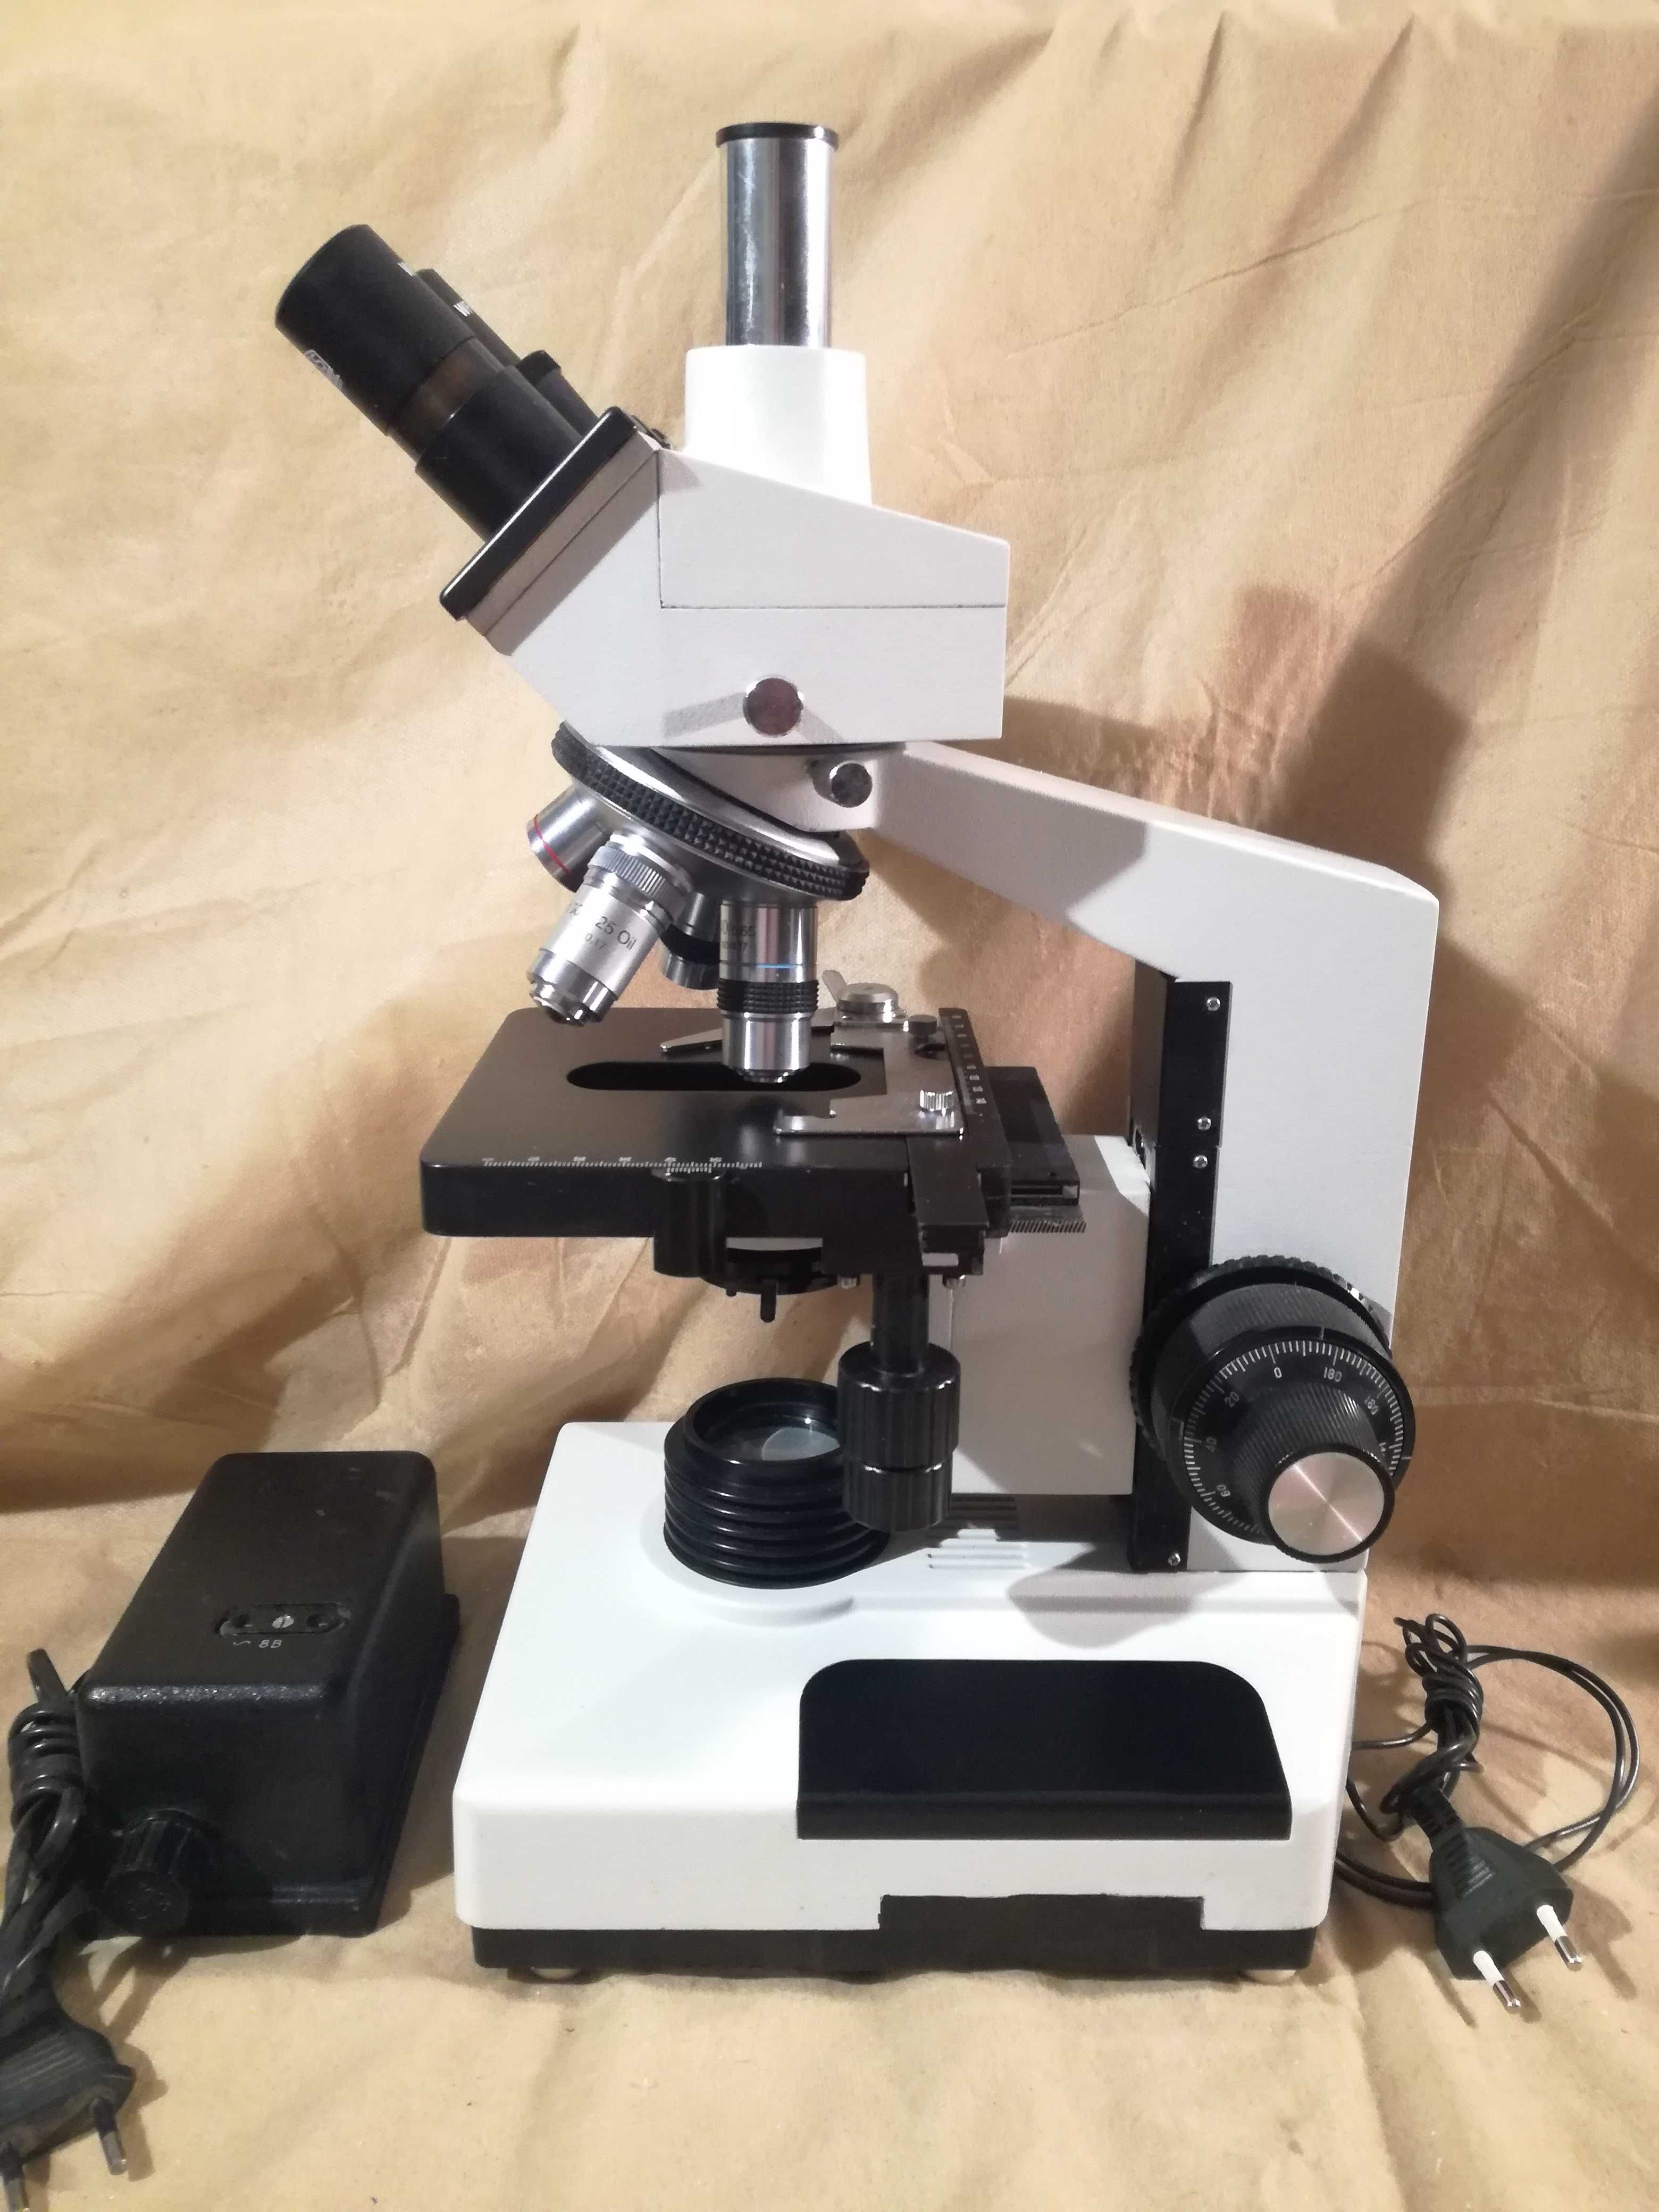 Mikroskop biolog. Trinokular A.Kruss MBL-2100 trino foto pzo Biolar